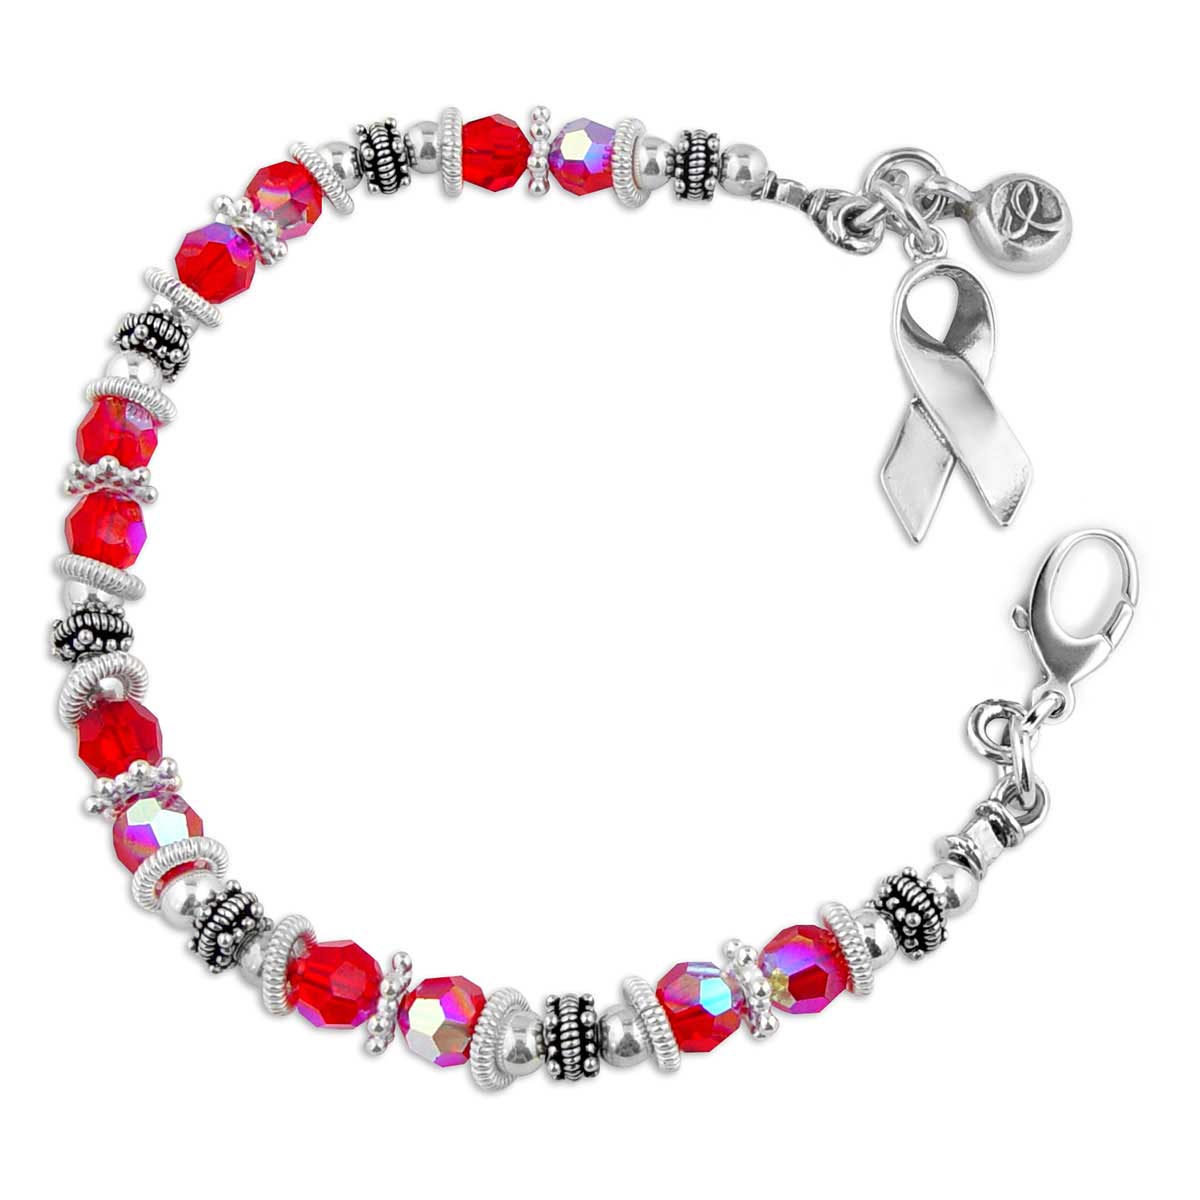 AIDS Awareness Bracelet B-201582